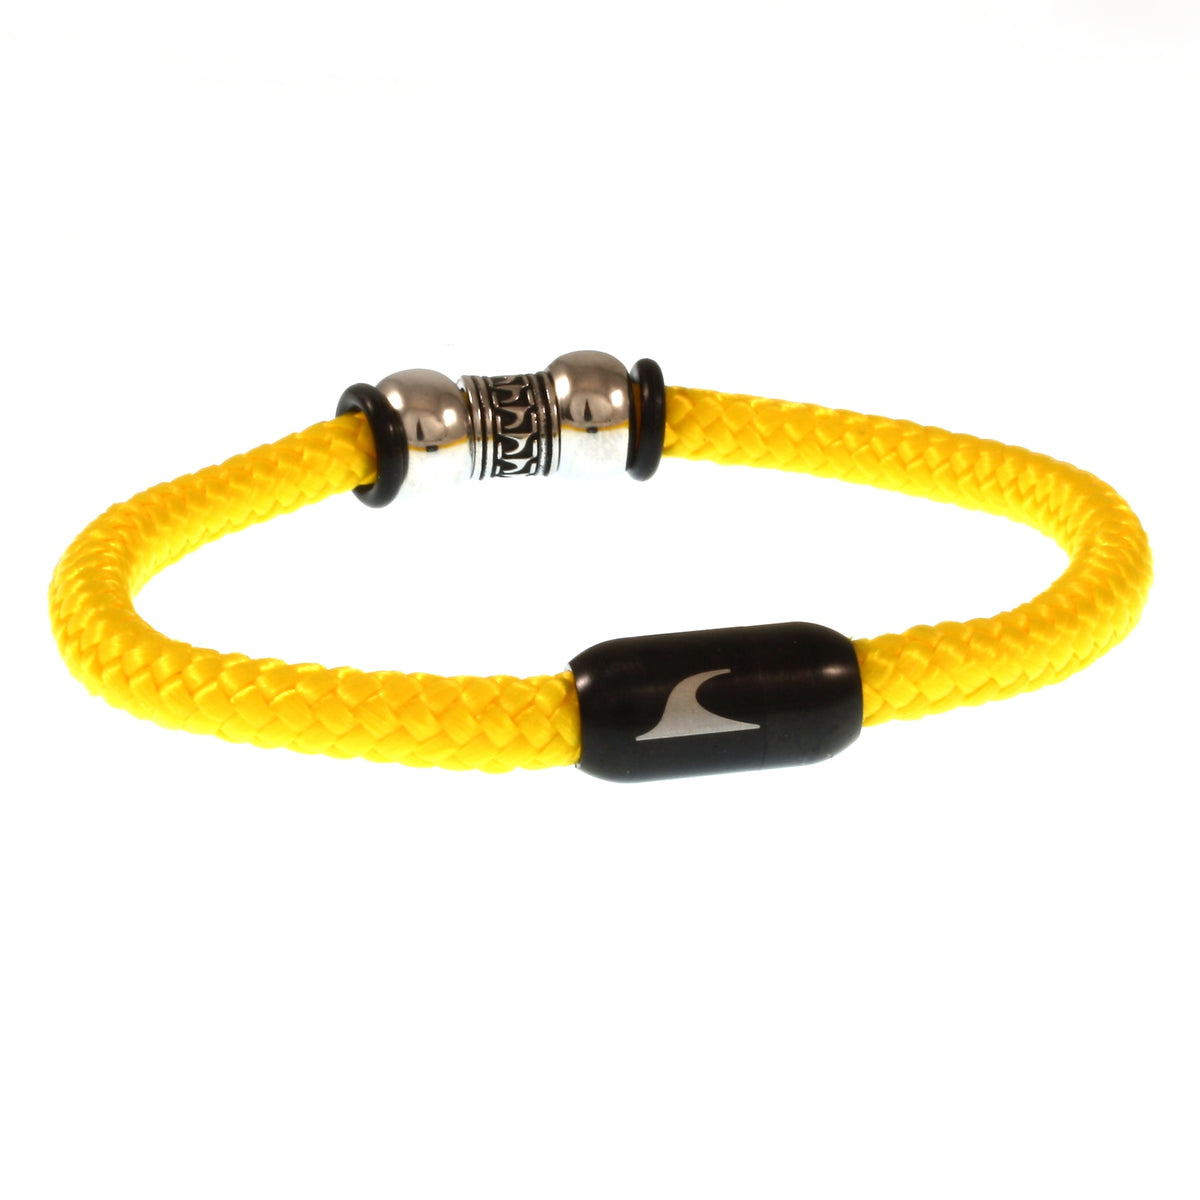 Herren-Segeltau-Armband-atoll-gelb-schwarz-geflochten-Edelstahlverschluss-hinten-wavepirate-shop-st